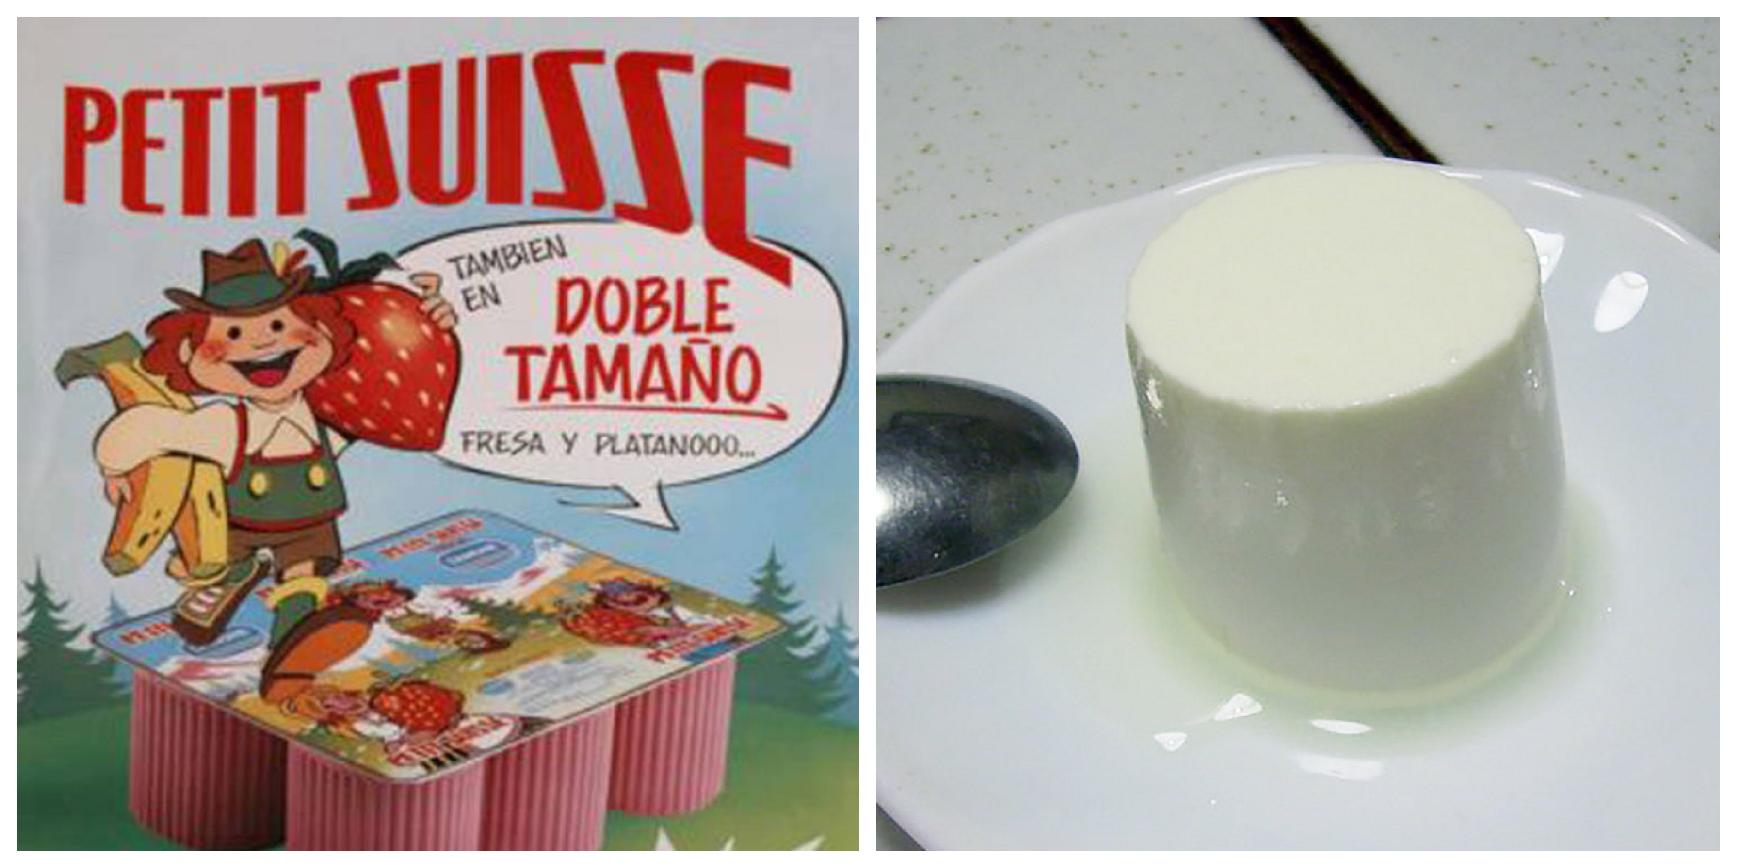 Miguel A. Lurueña on X: El petit-suisse no es un yogur, ni es una marca,  ni es suizo. Es un tipo de queso enriquecido con nata y desarrollado en  Normandía (Francia) en